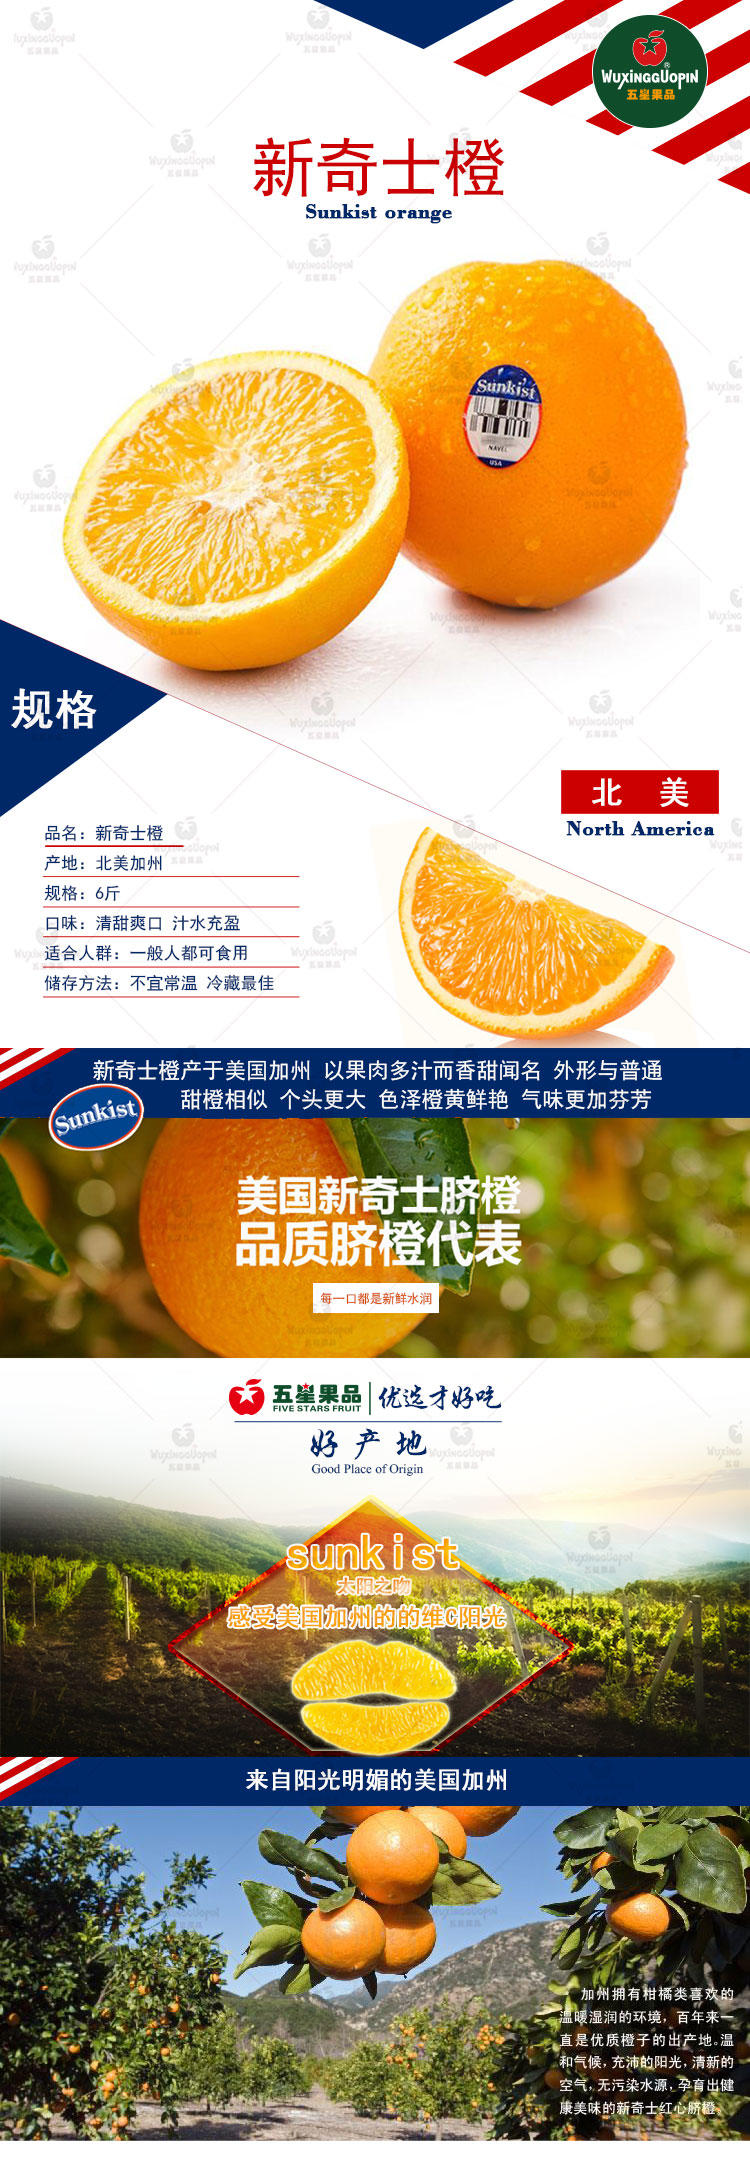 【五星果品】北美水果基地  北美橙  超值6斤